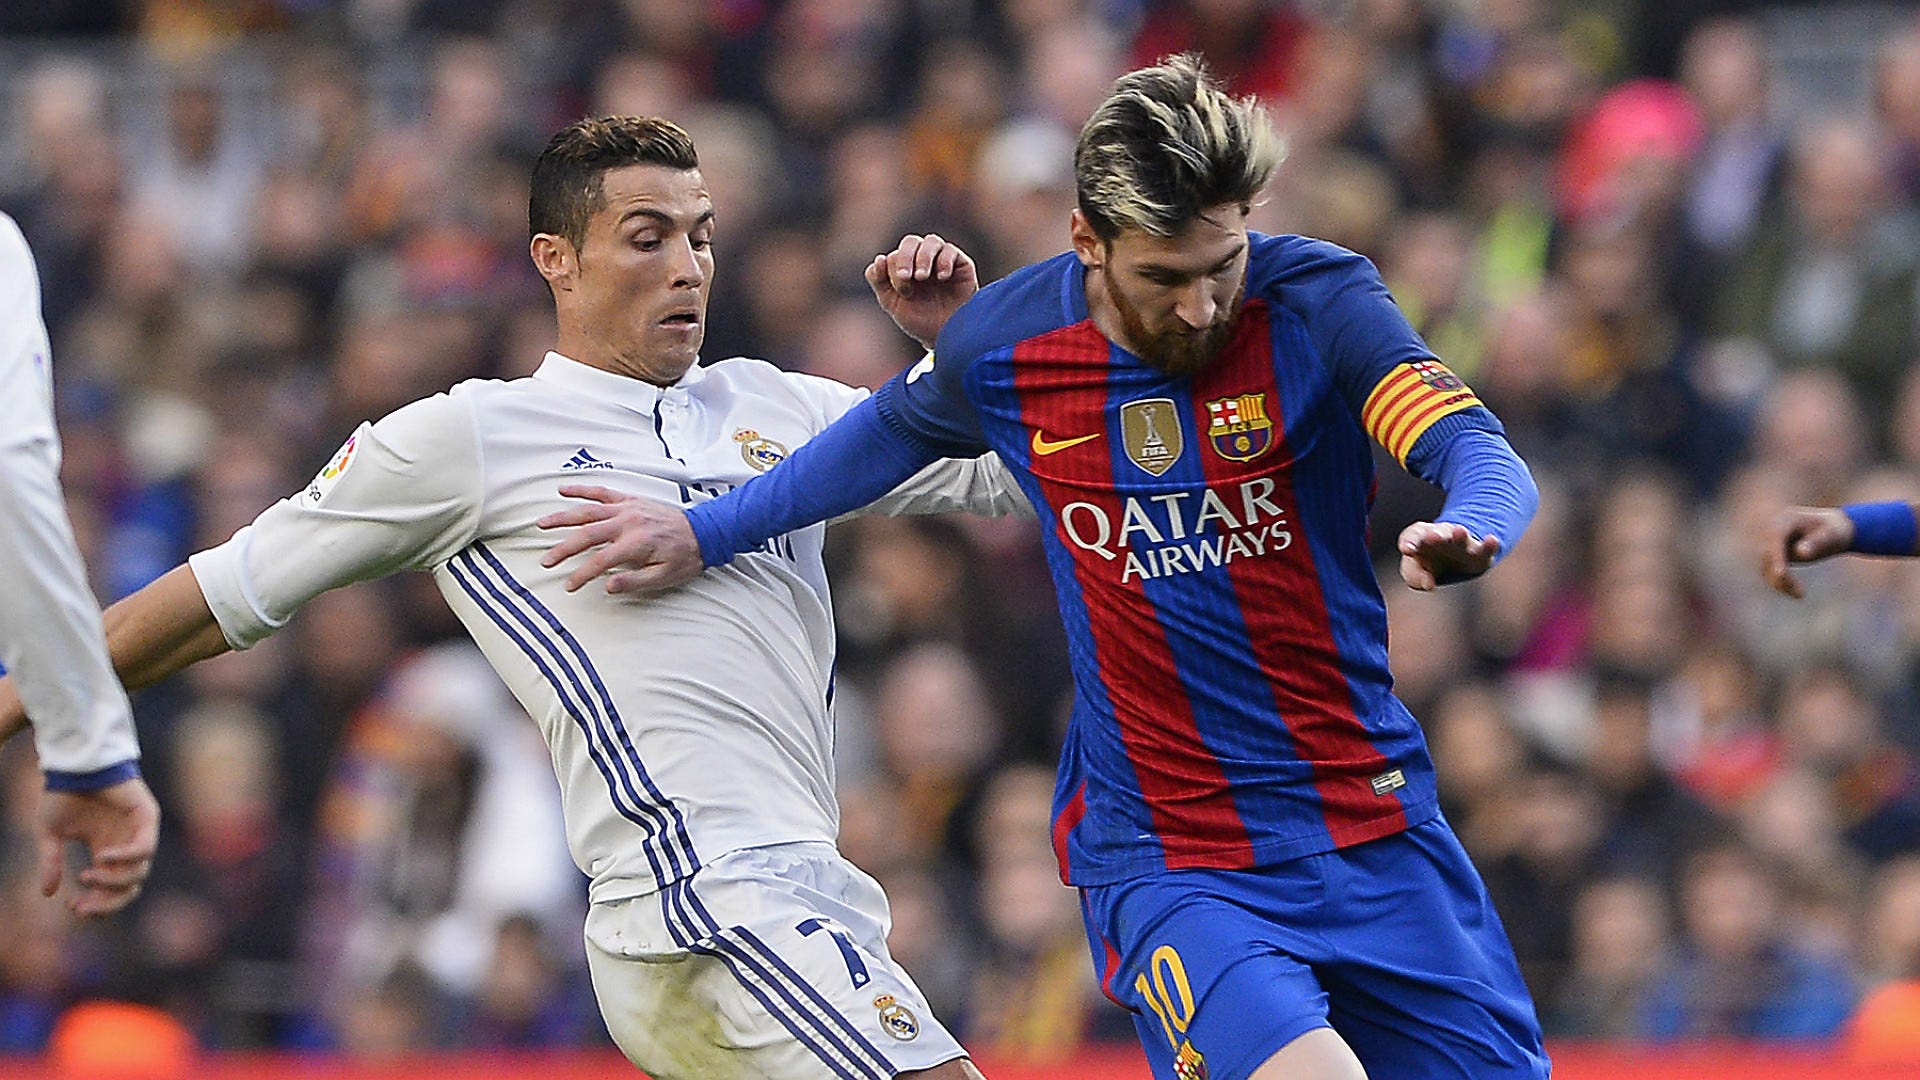 'Lionel Messi compared to legends, Cristiano Ronaldo compared to Messi